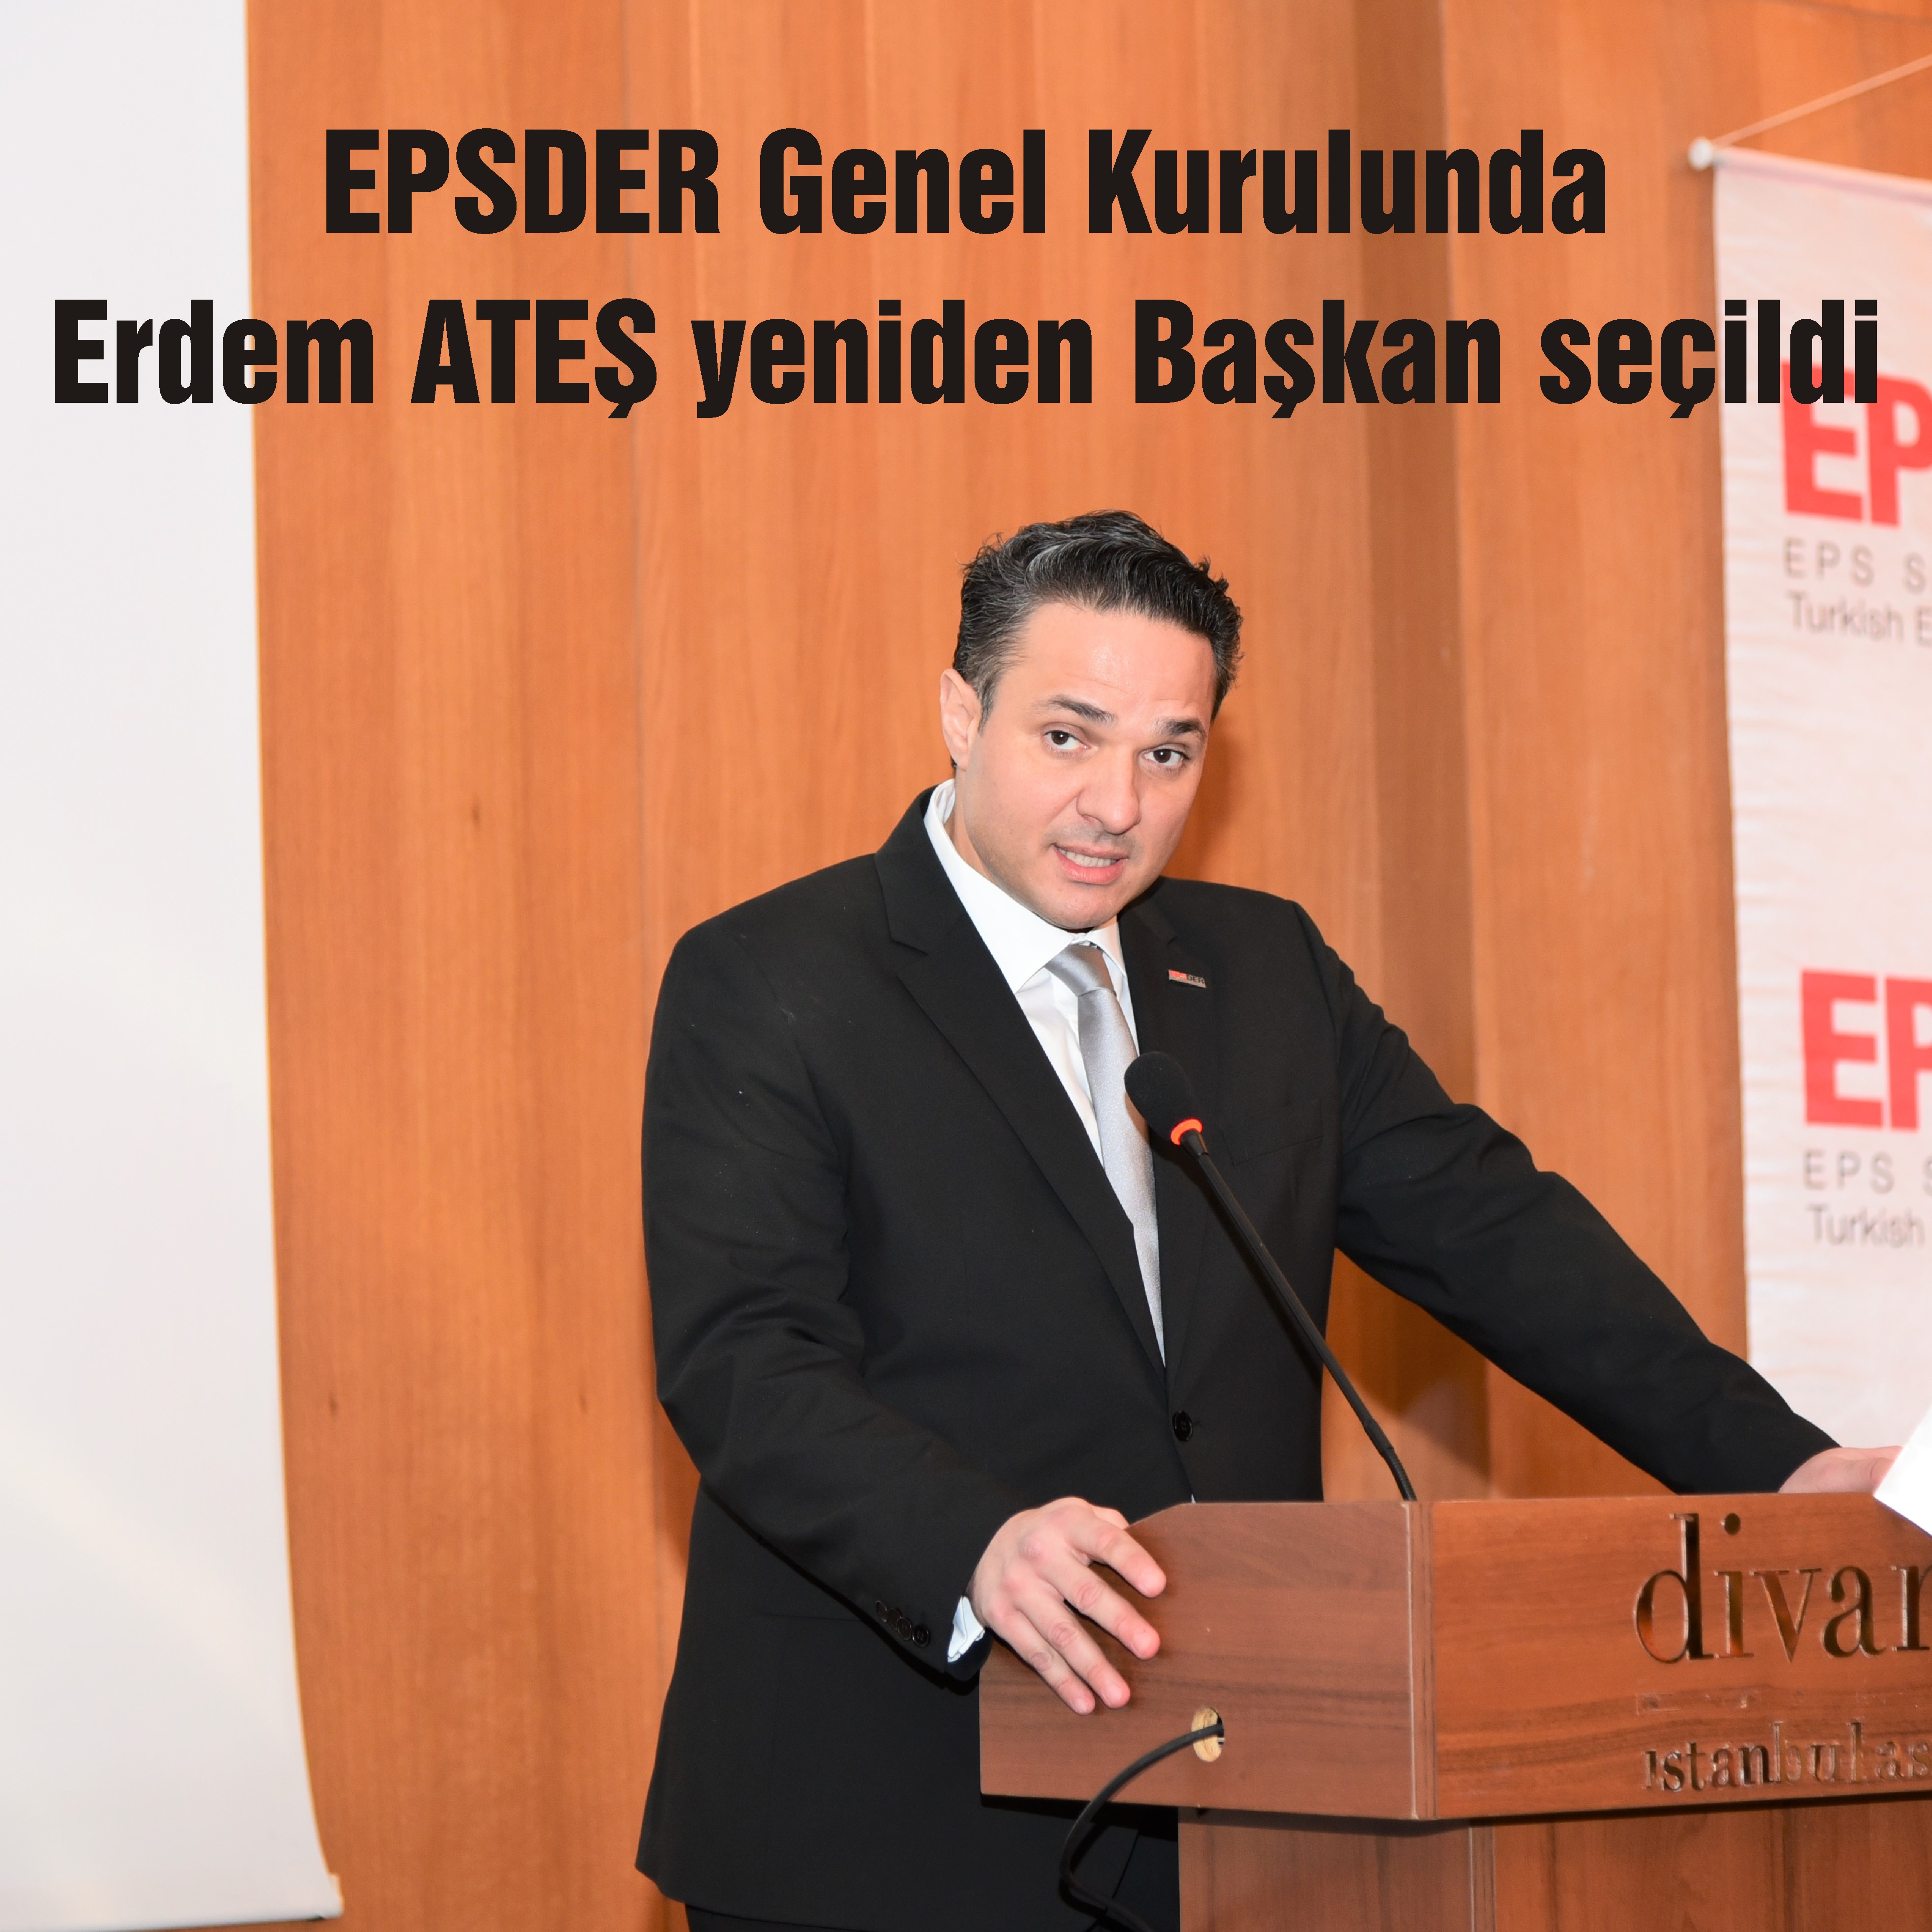 EPSDER Genel Kurulu sonucunda Erdem ATEŞ yeniden Başkan seçildi